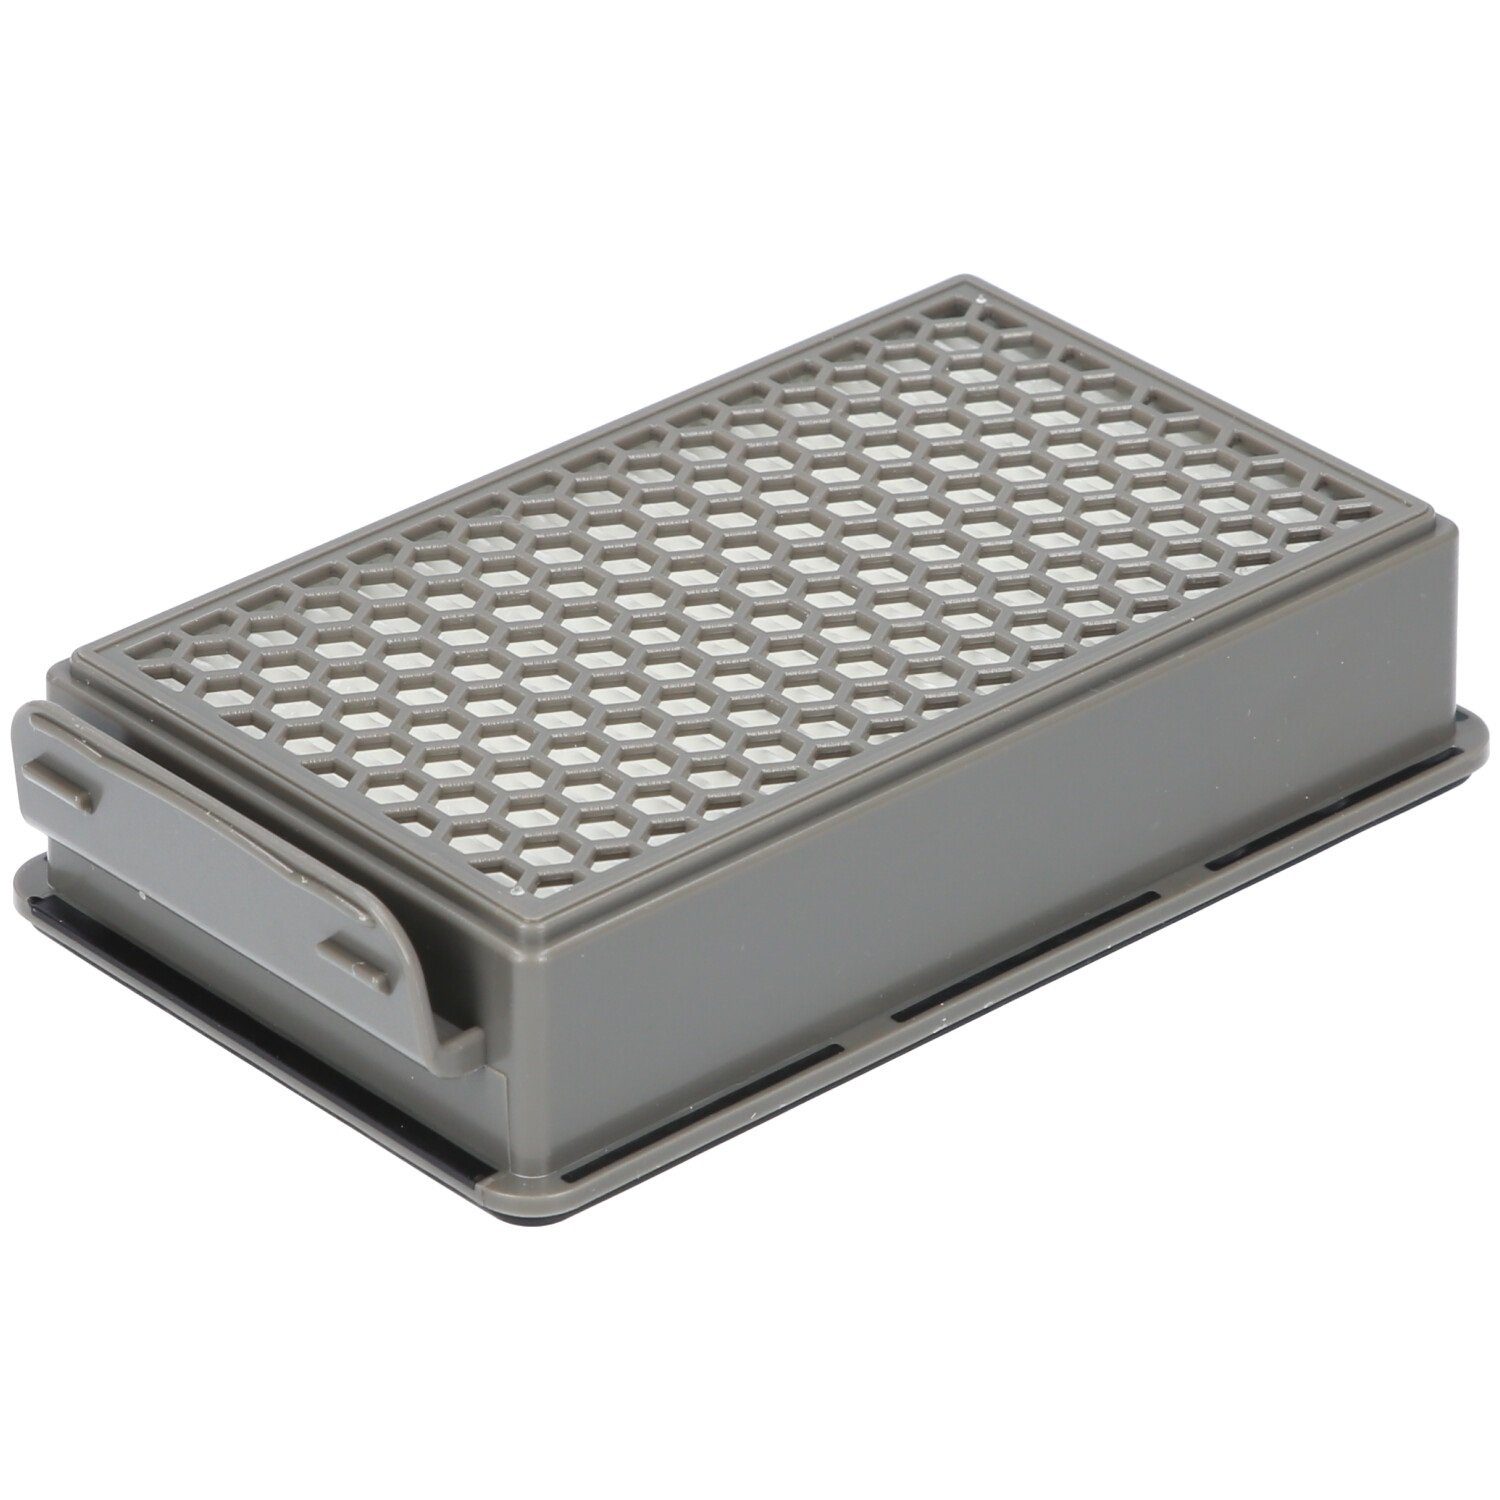 McFilter Filter-Set geeignet für Samurai SG3751WA Filterkassette, Rundfilter, 1x 1x ZR005901 Staubsauger, für Alternative